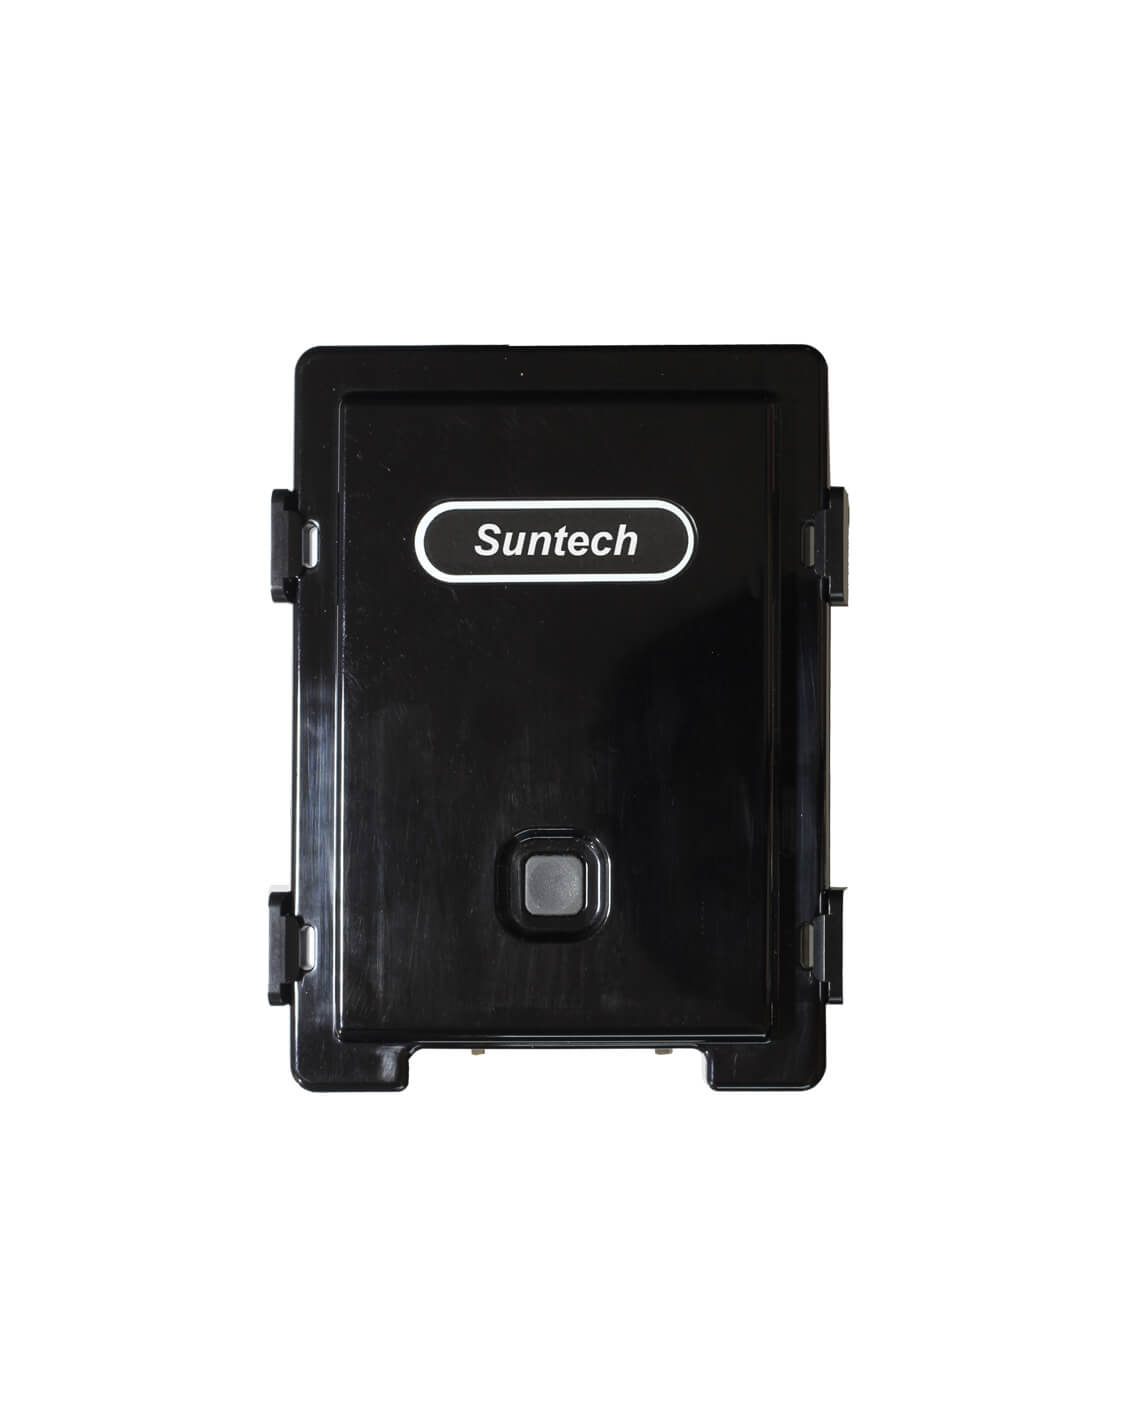 Suntech ST3330 GPS tracker